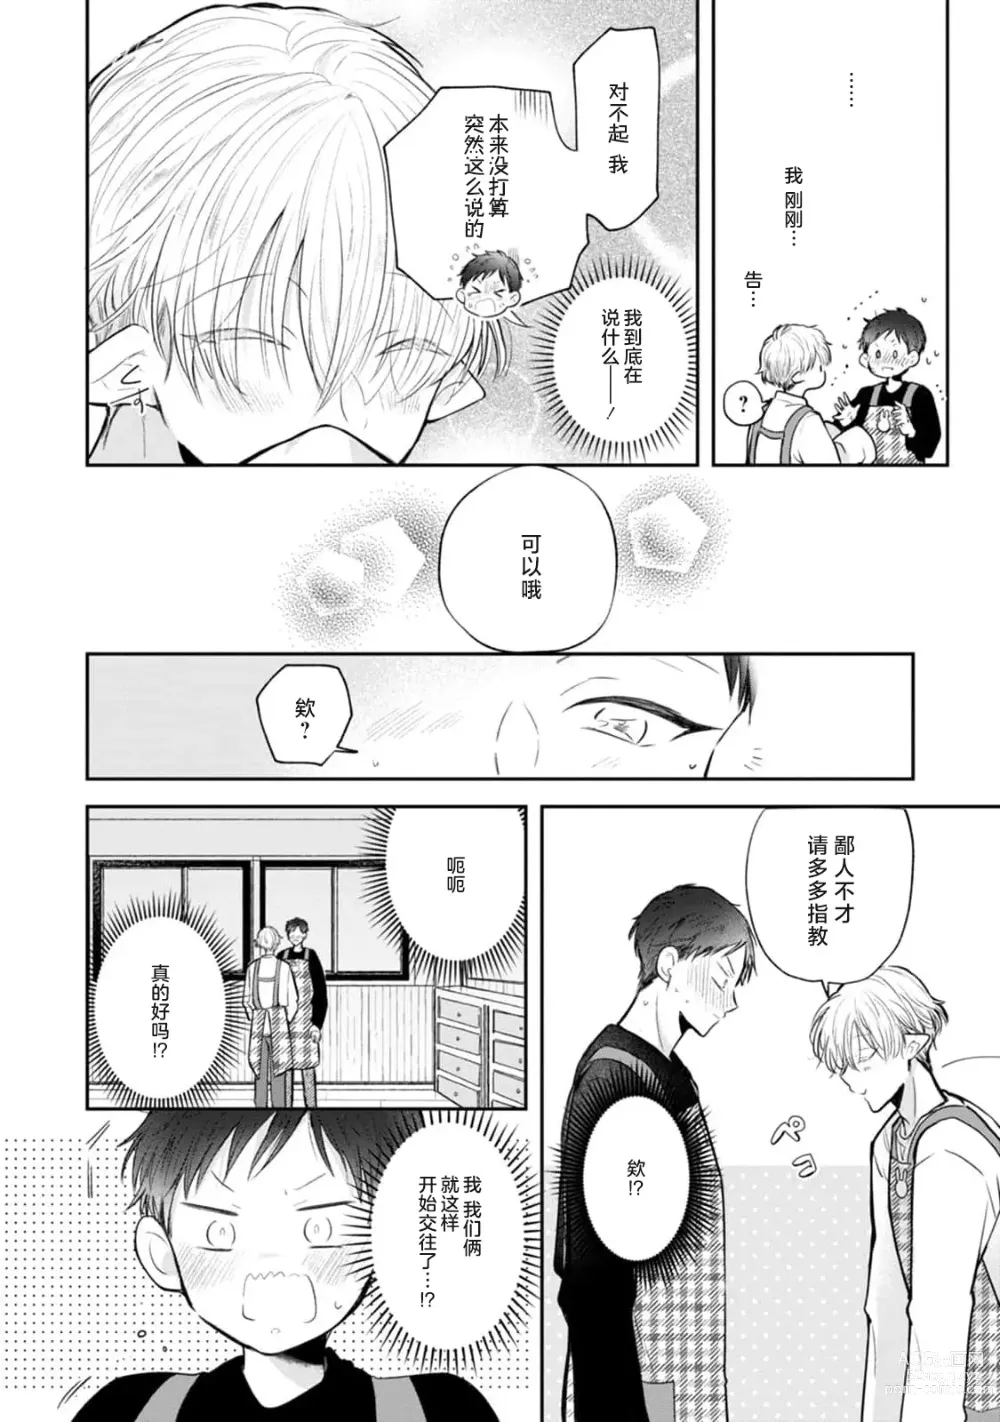 Page 8 of manga 叶羽老师全部是第一次 1-4